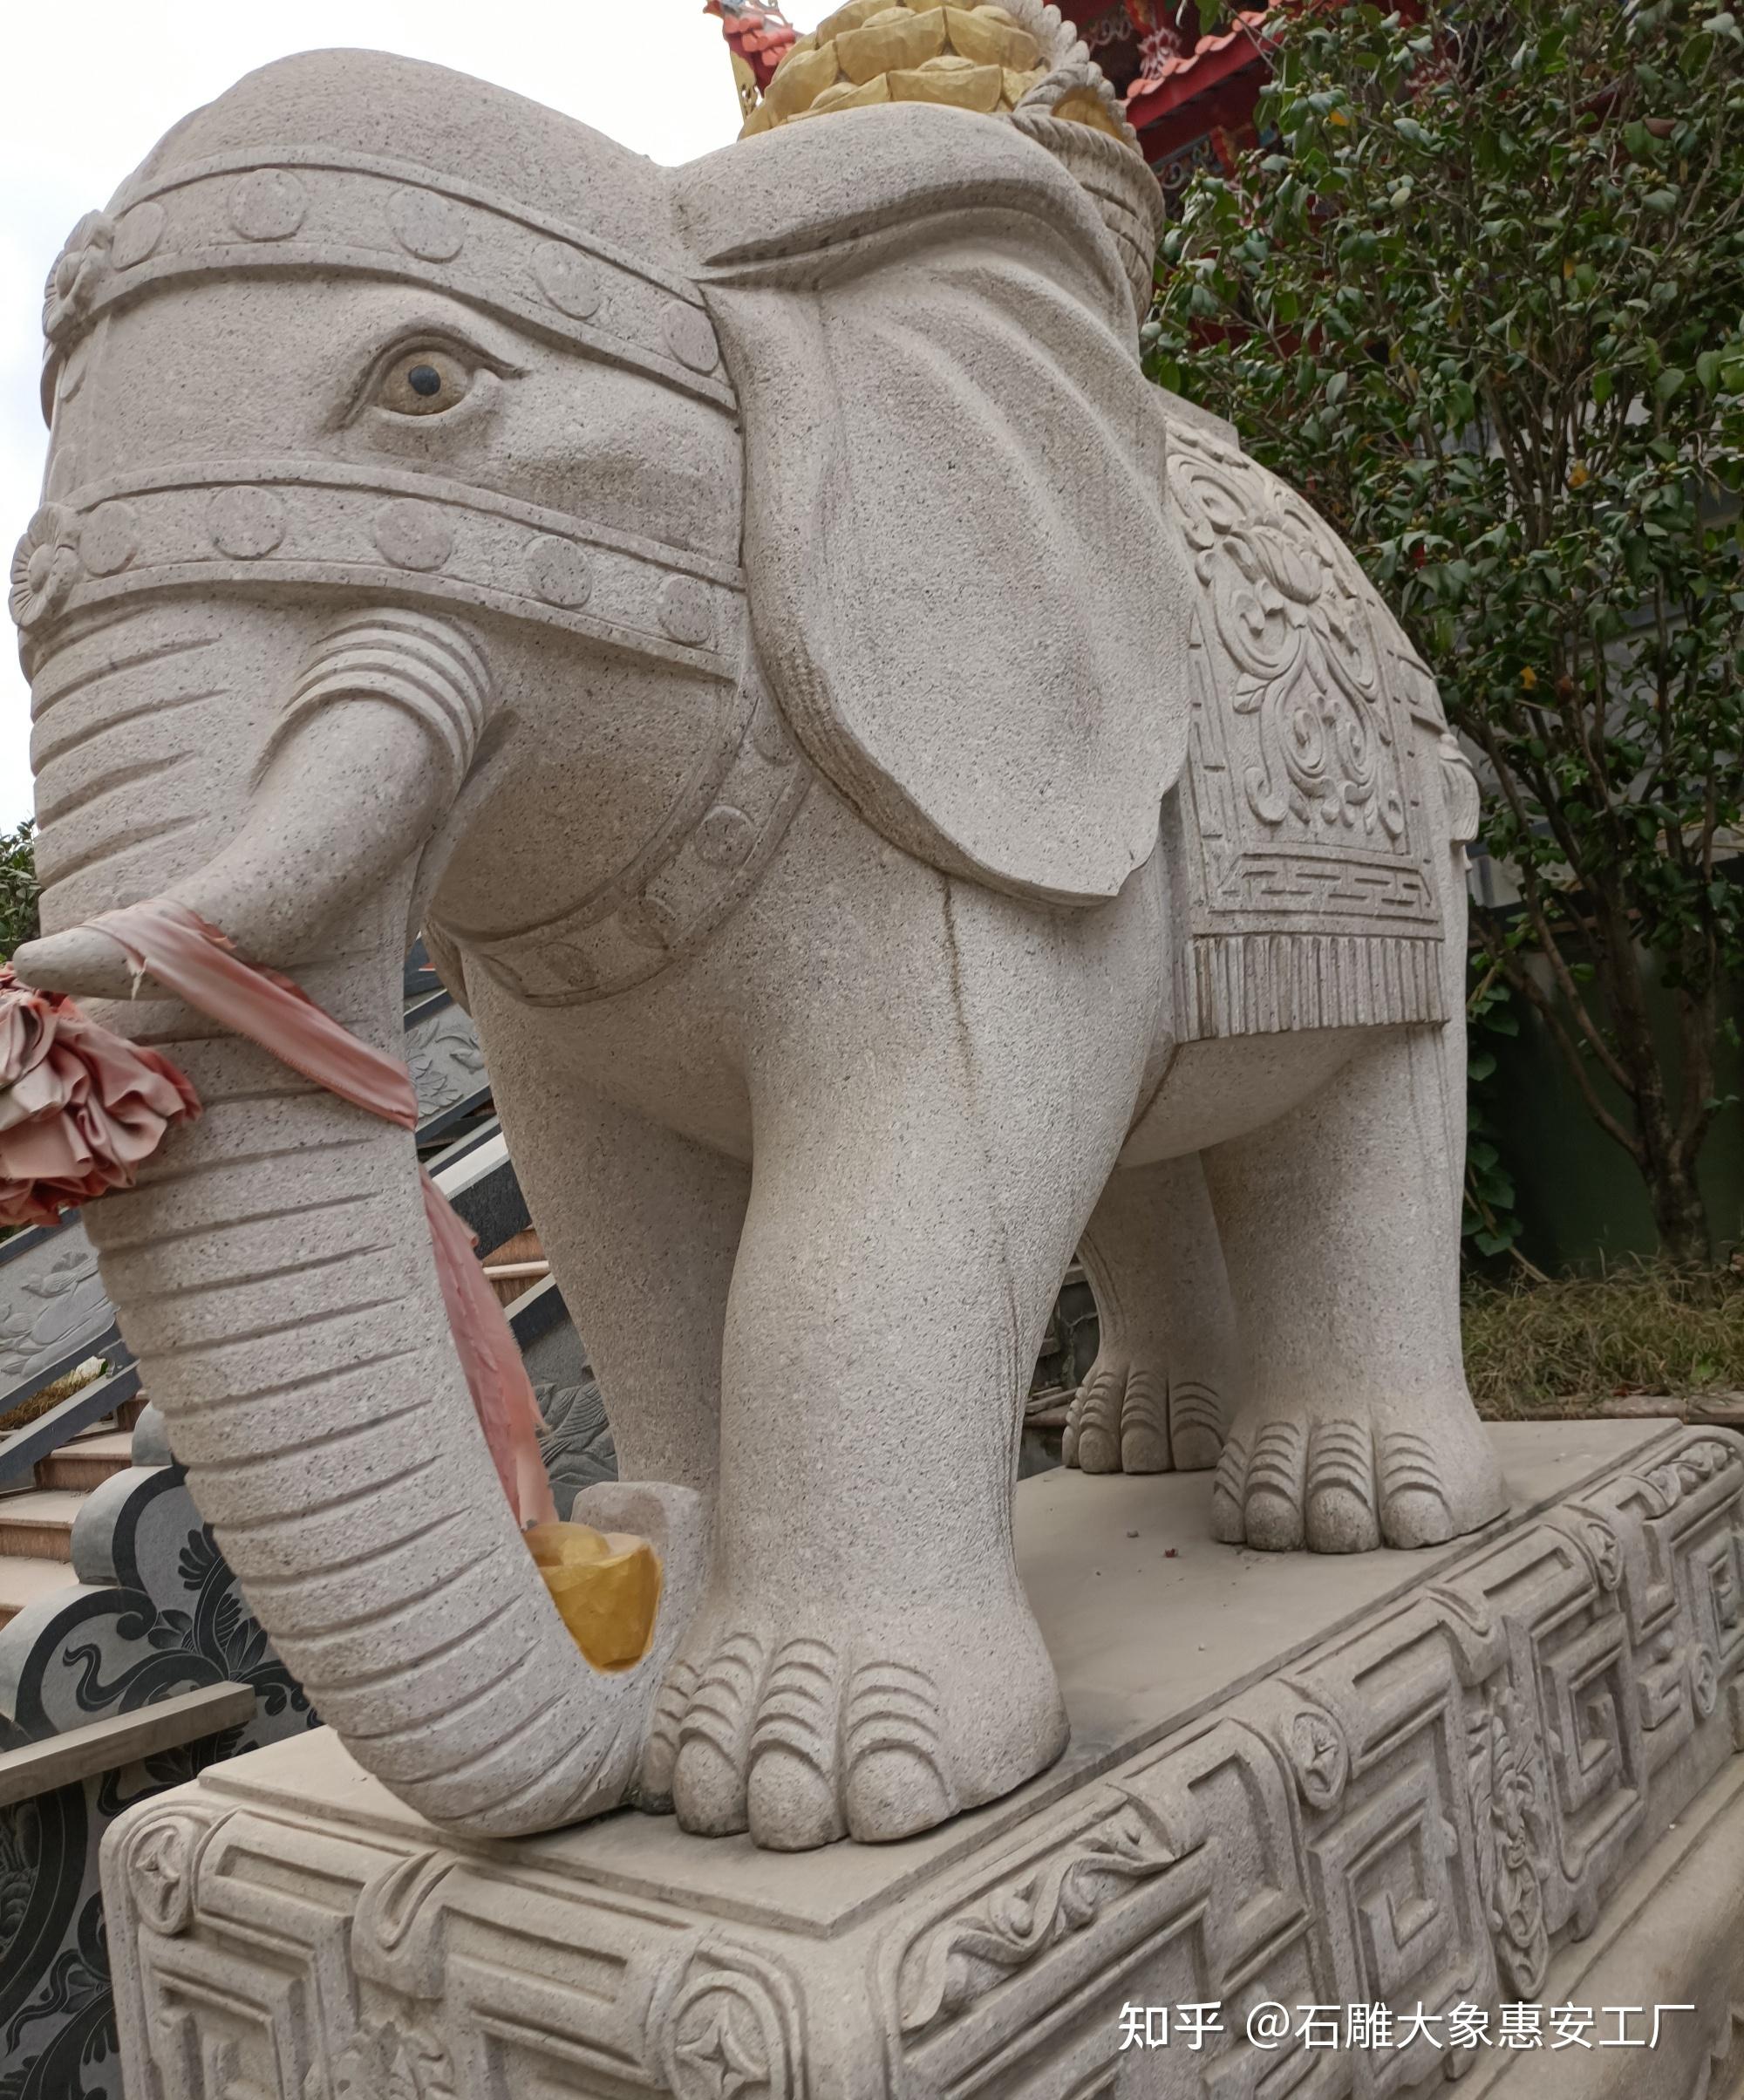 明孝陵大象石雕图片